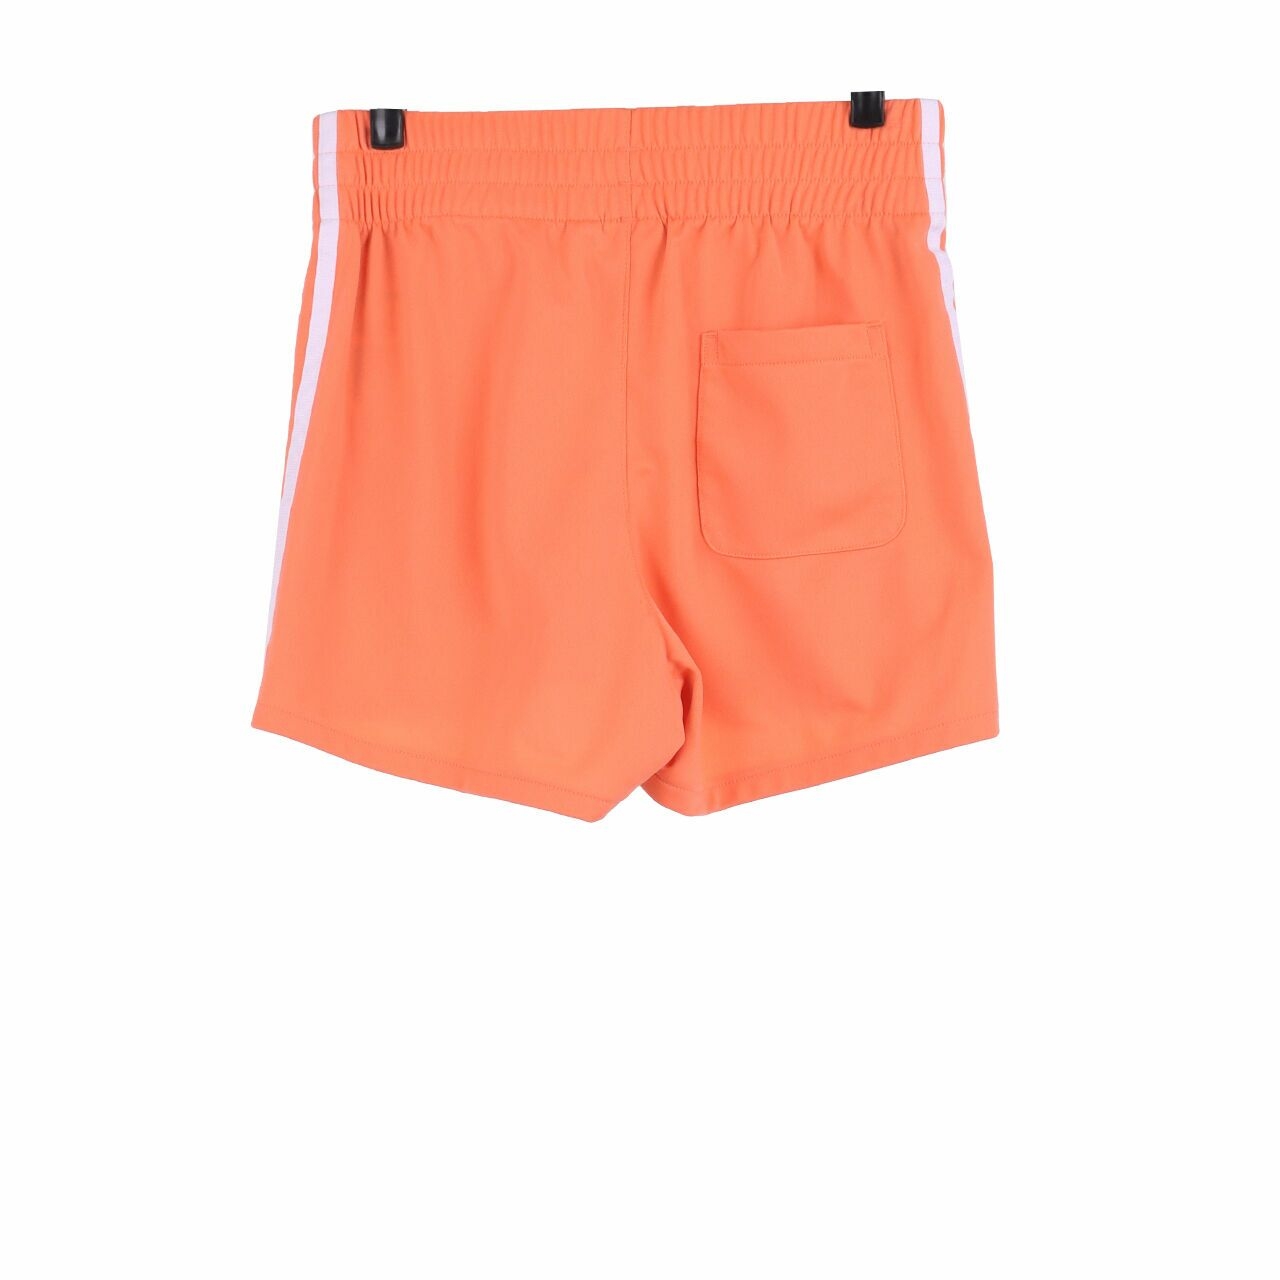 Adidas Coral Shorts